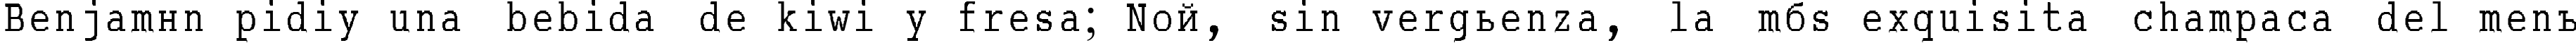 Пример написания шрифтом ABC_TypeWriterRussian текста на испанском